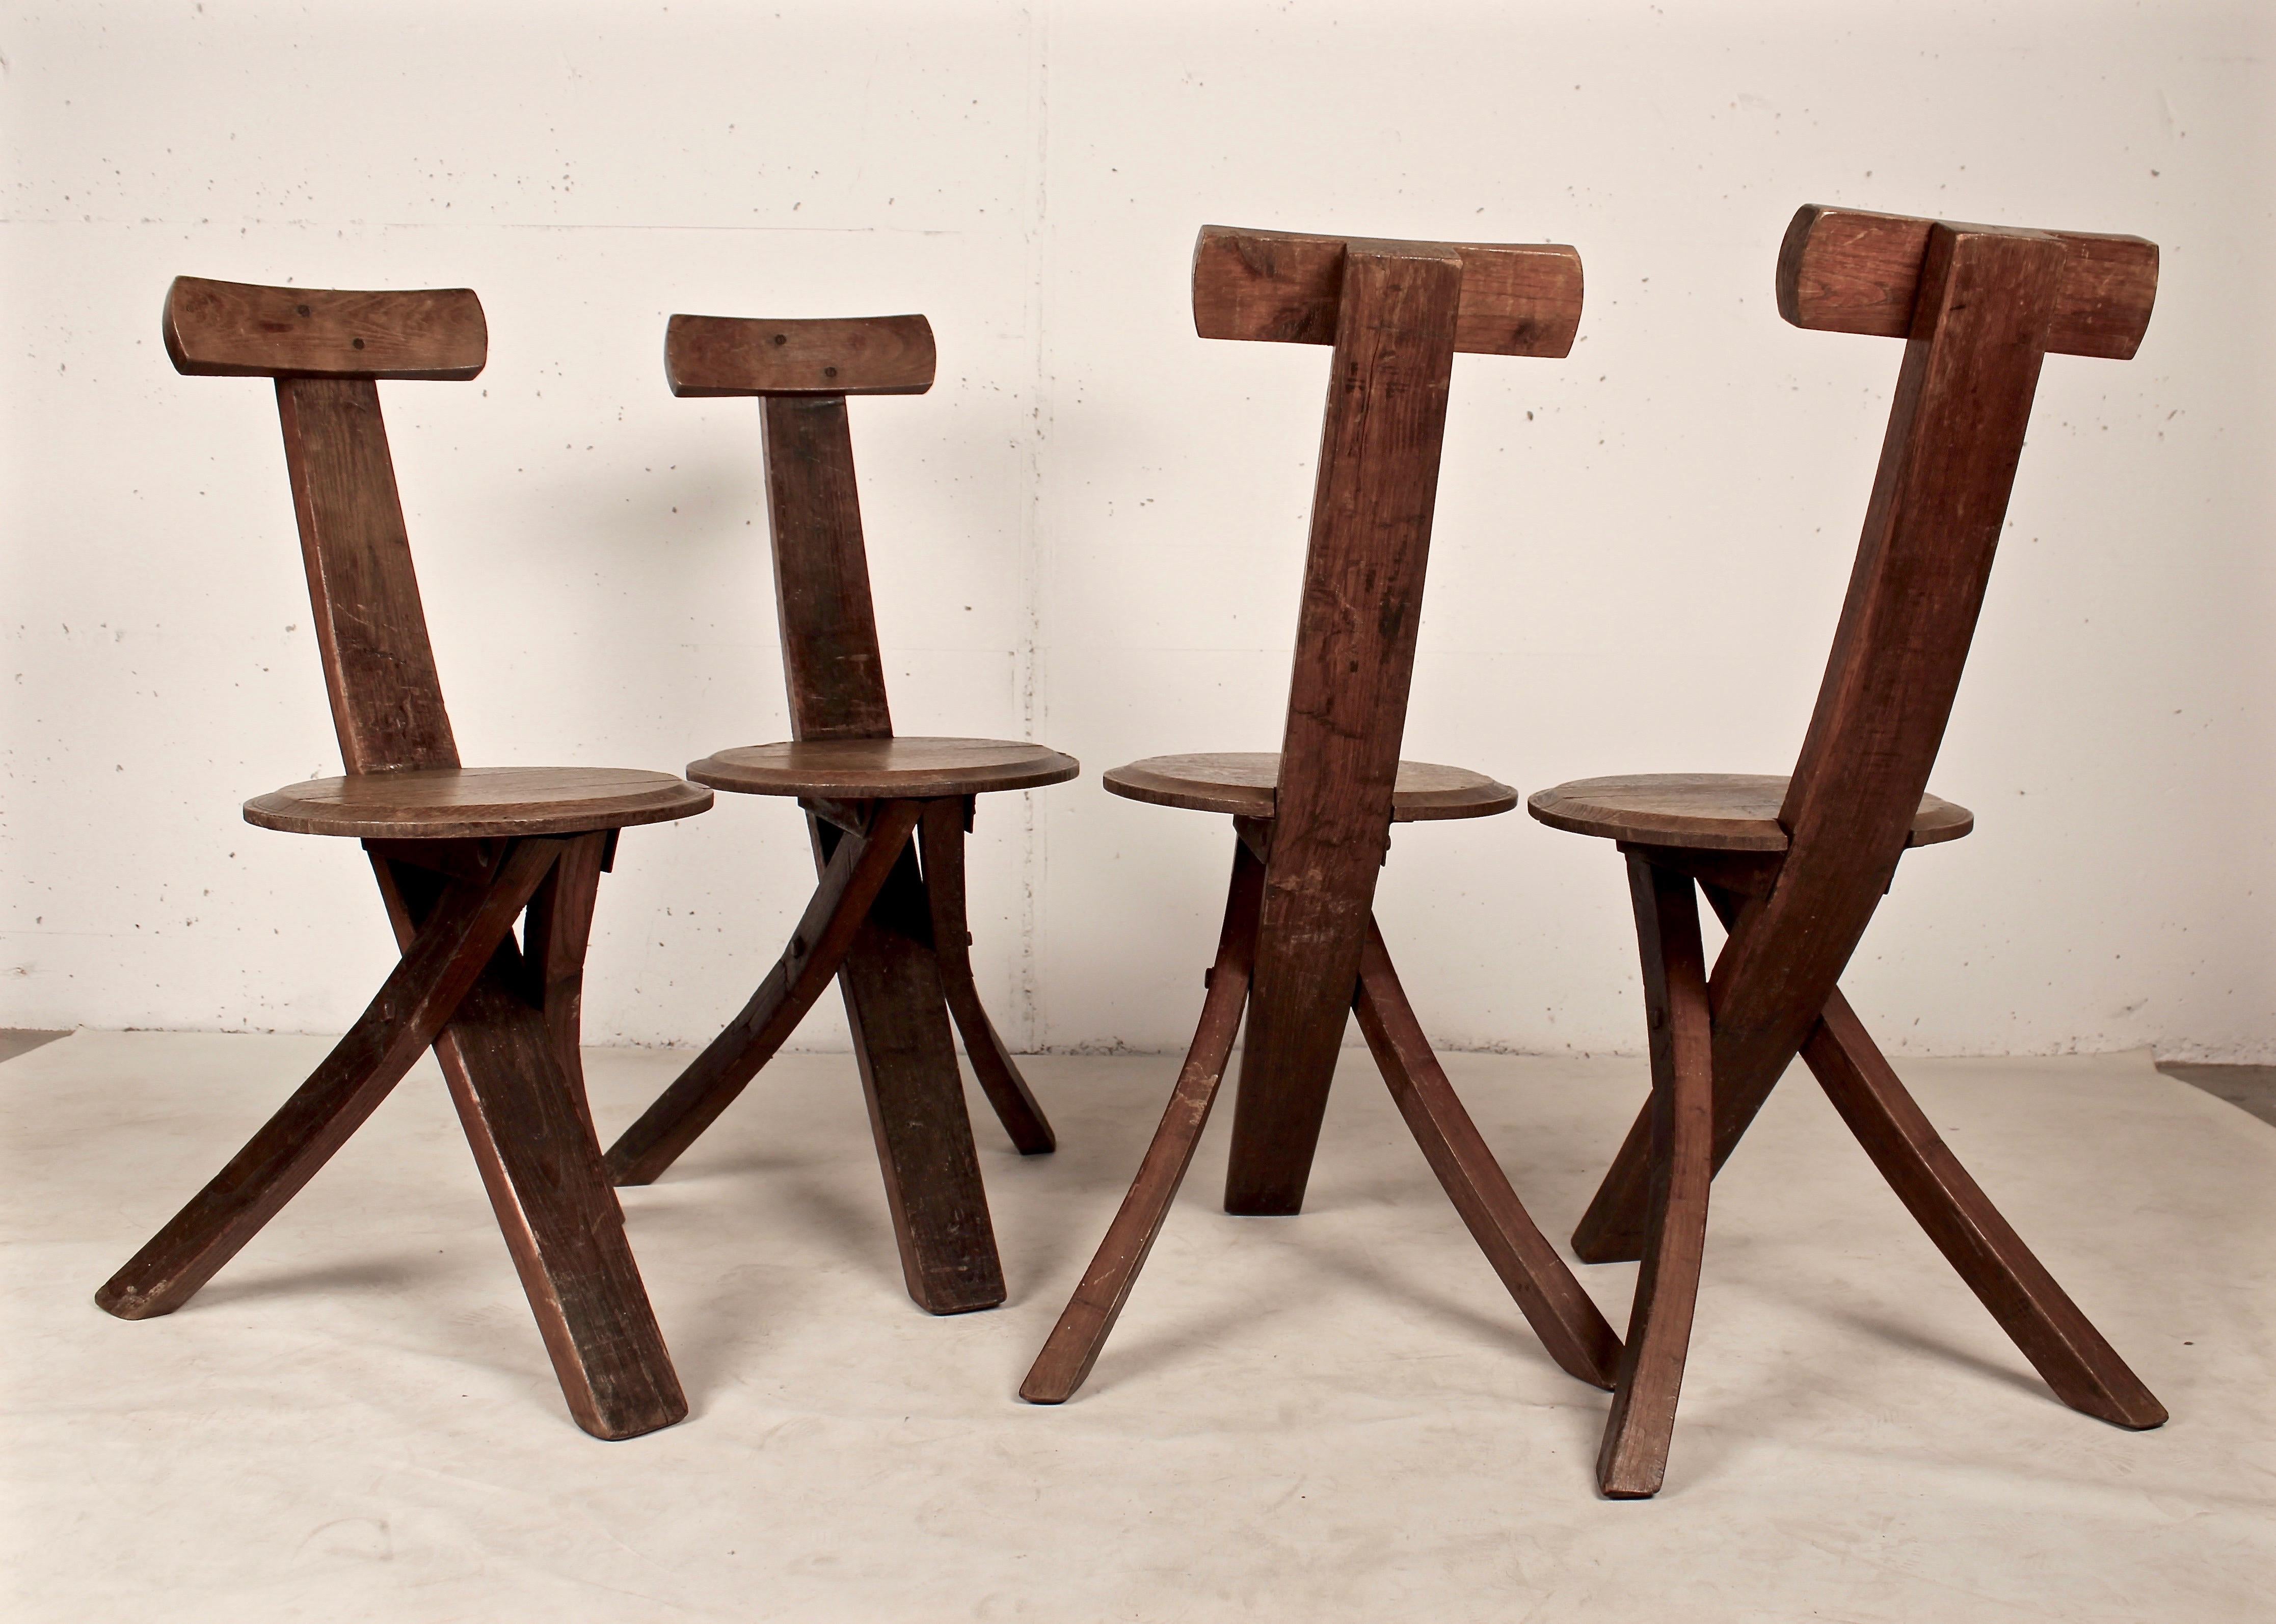 French Early 20th Century Folk Art Tripod Chairs in Oak